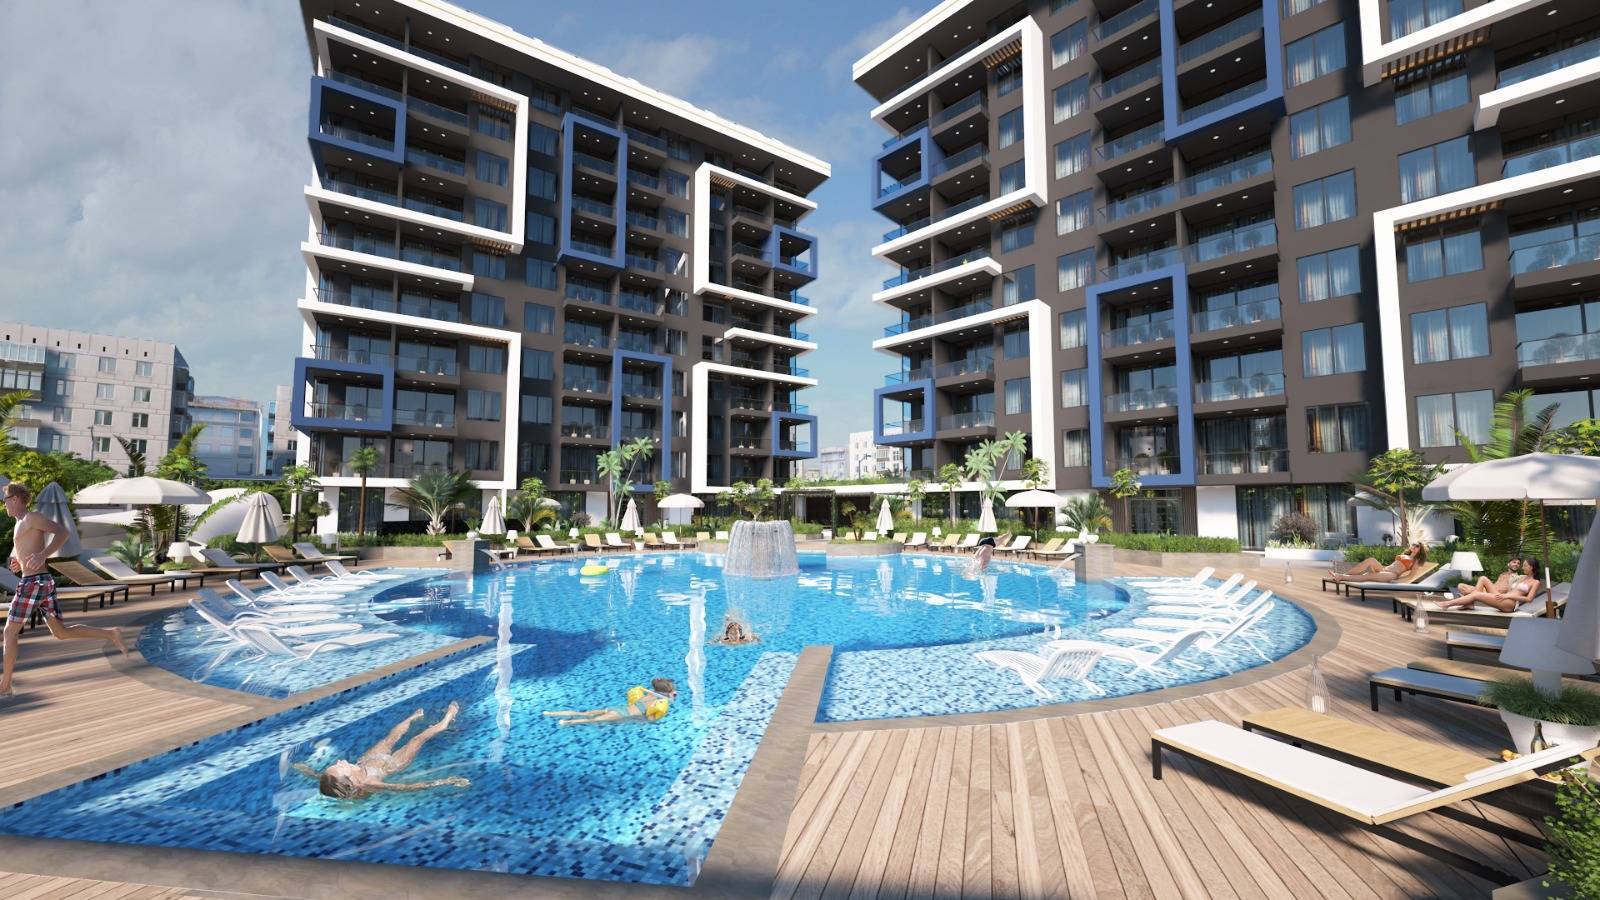 Nowe mieszkania na sprzedaż w Turcji - centrum Alanya